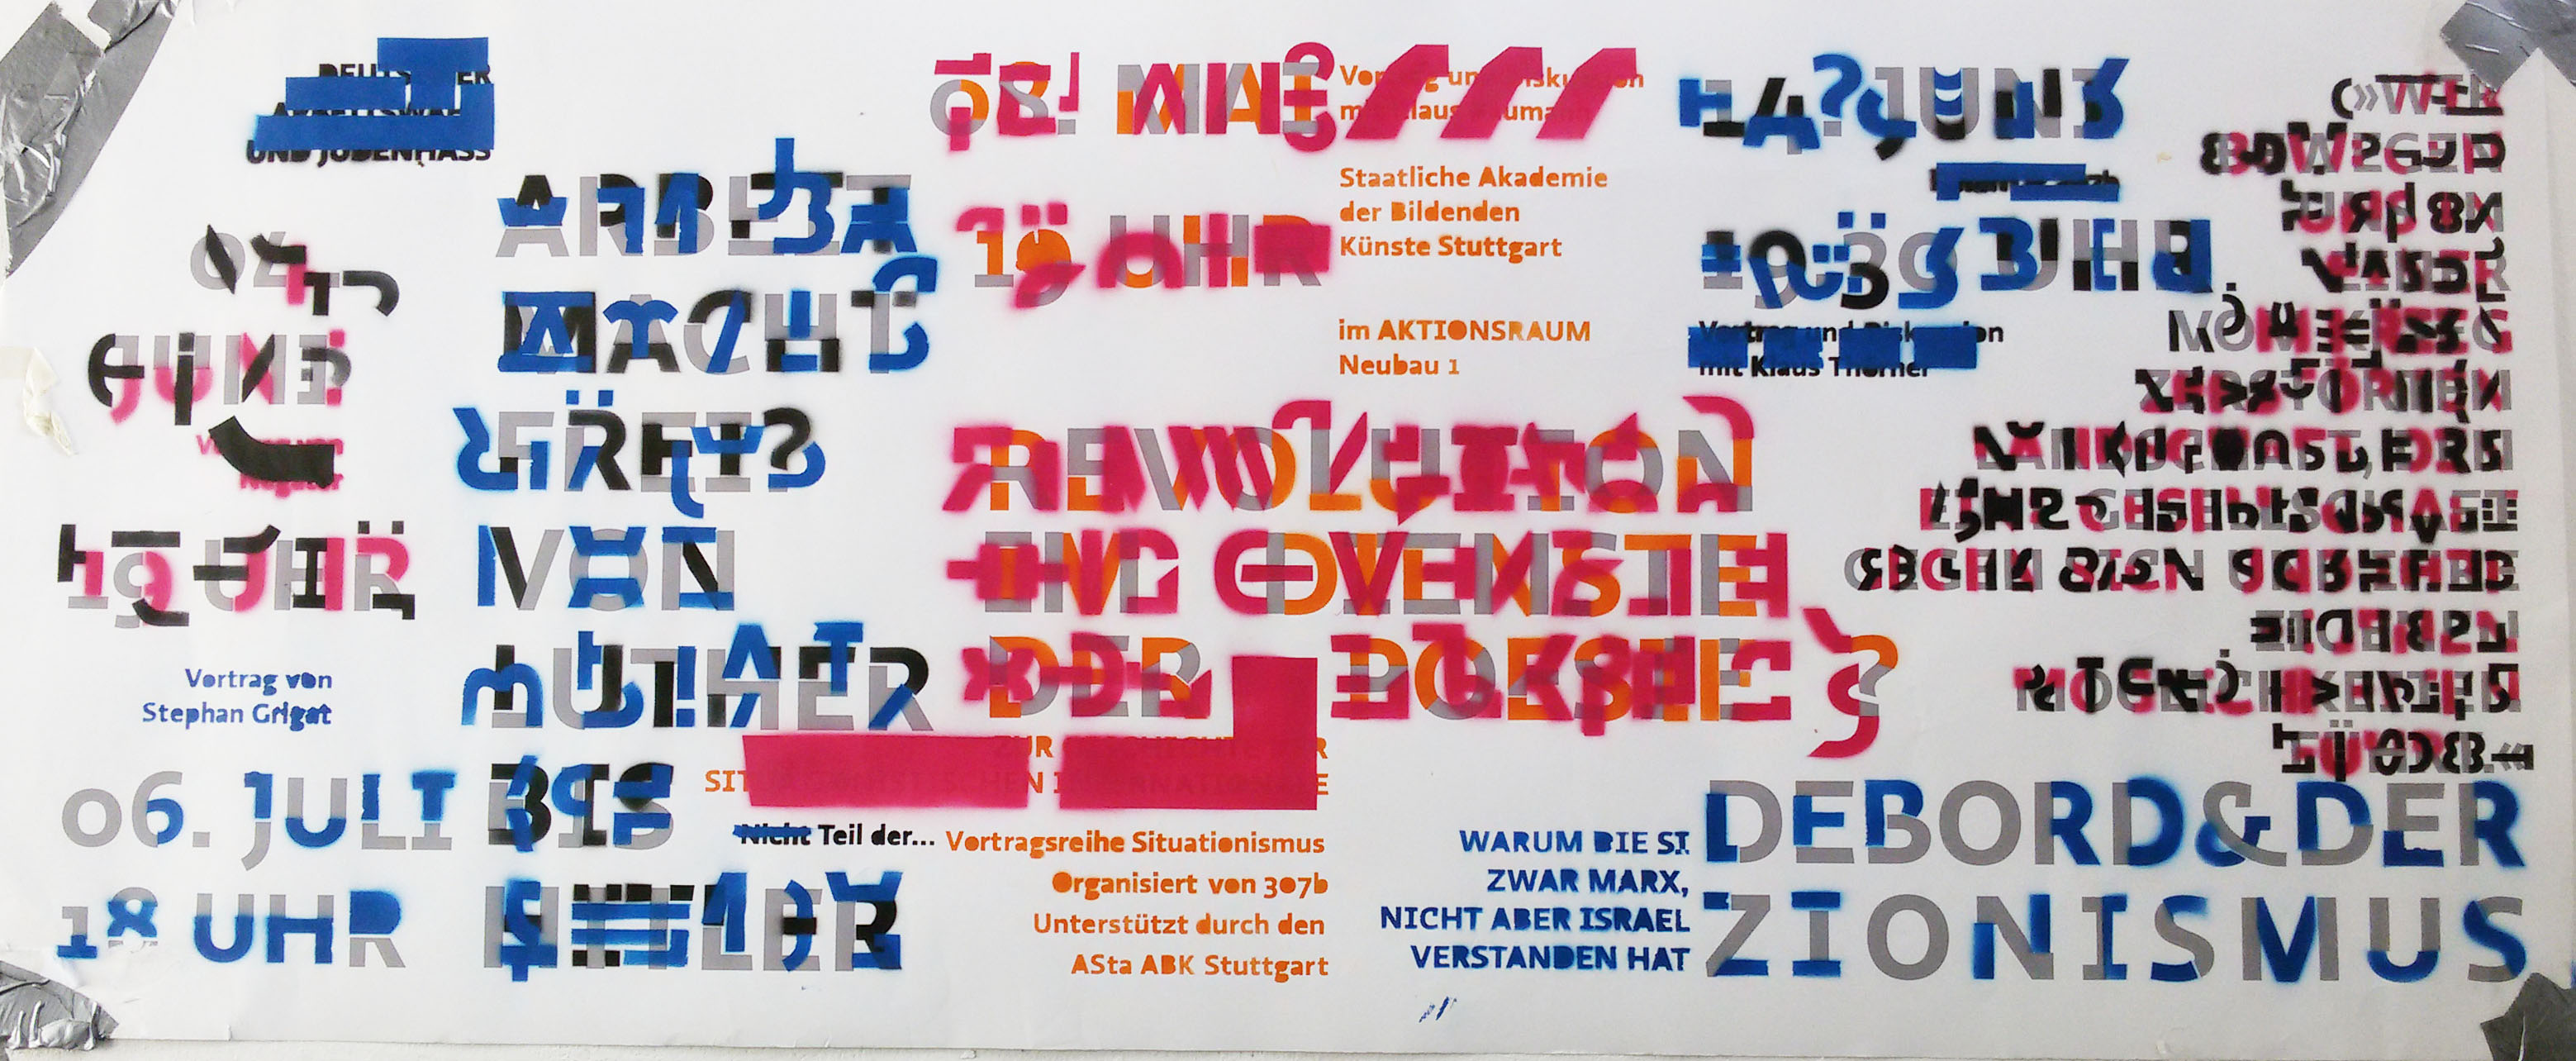 Abb.: Plakat (Gestaltung: Nikolas Wiest, Christina Mäckelburg)